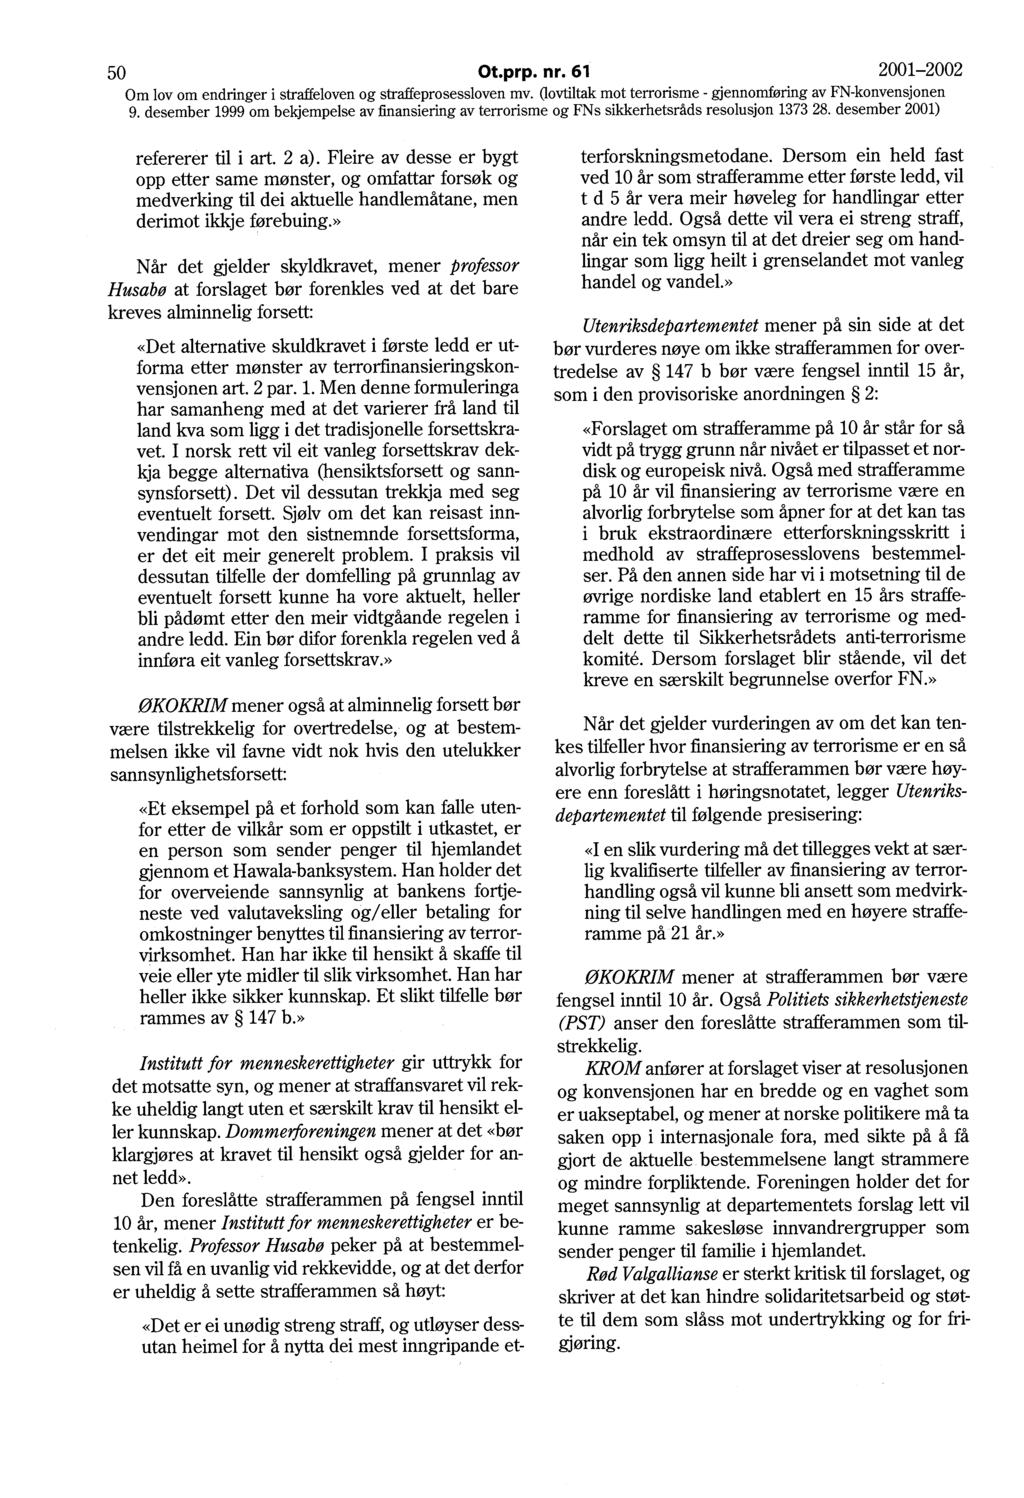 50 Ot.prp. nr. 61 2001-2002 Om lov om endringer i straffeloven og straffeprosessloven mv. Oovtiltak mot terrorisme - gjennomføring av FN-konvensjonen refererer til i art. 2 a).